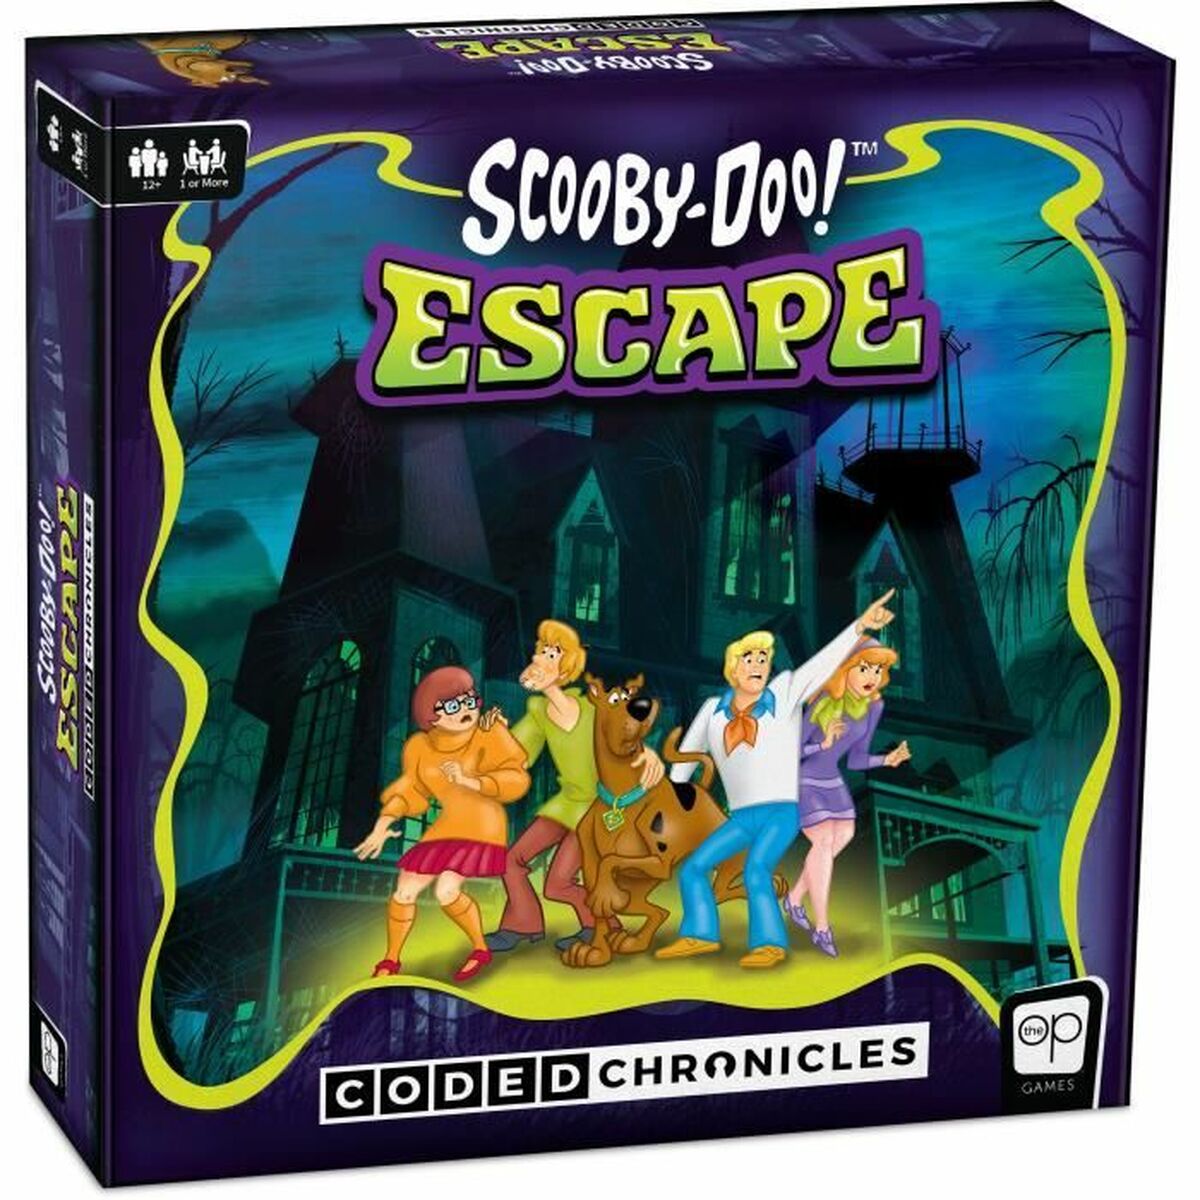 Jeu d’habileté Scooby-Doo Coded Chronicles - Escape